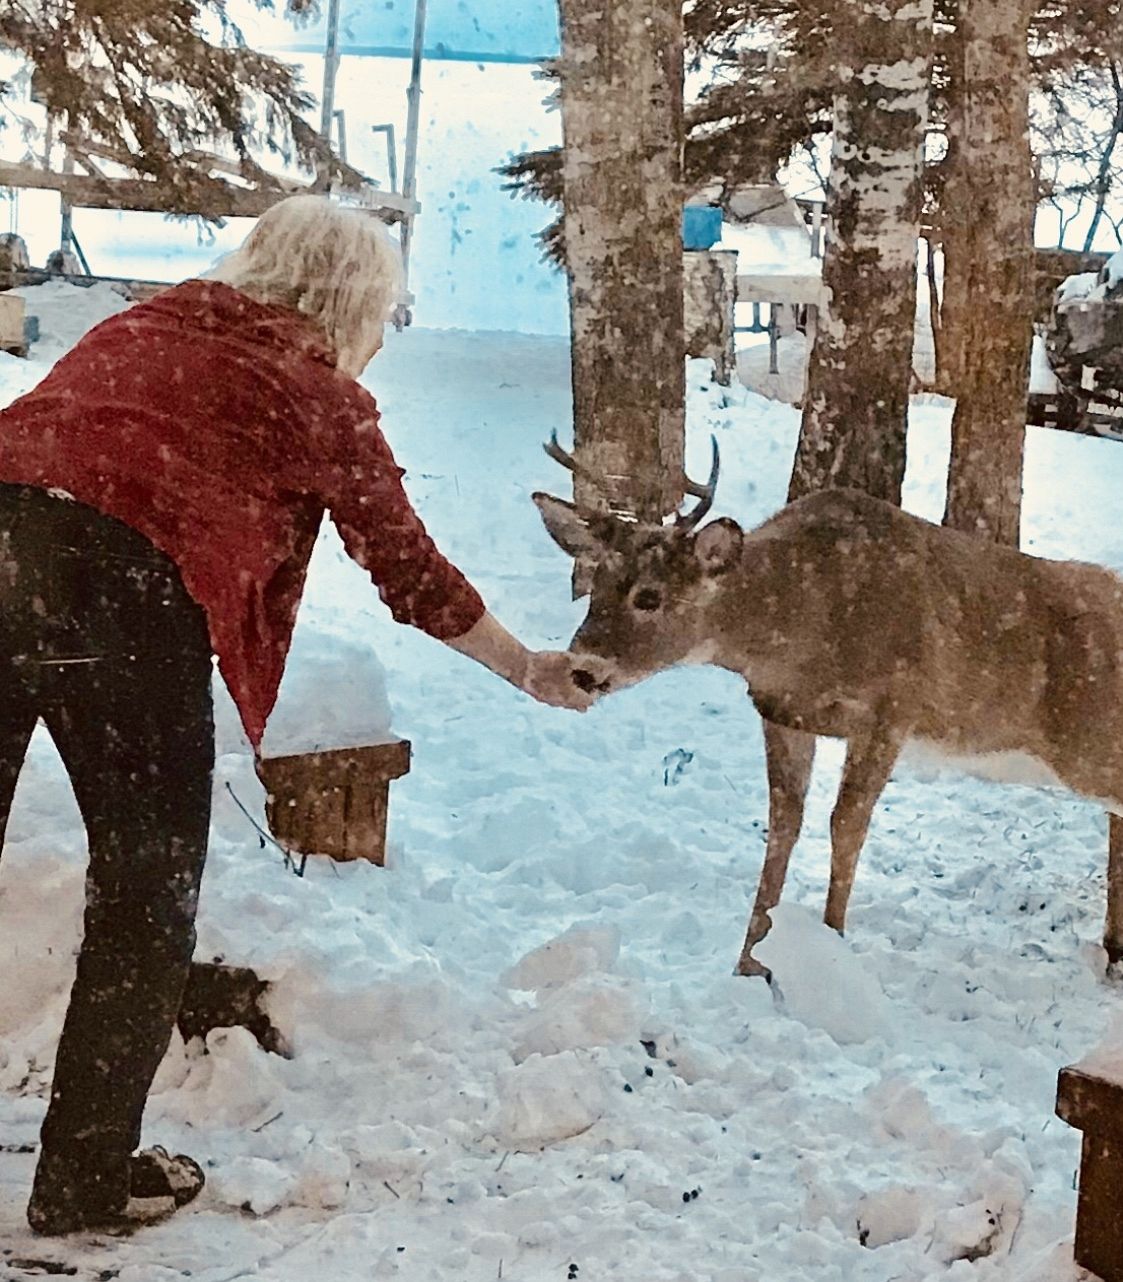 Befriending a deer